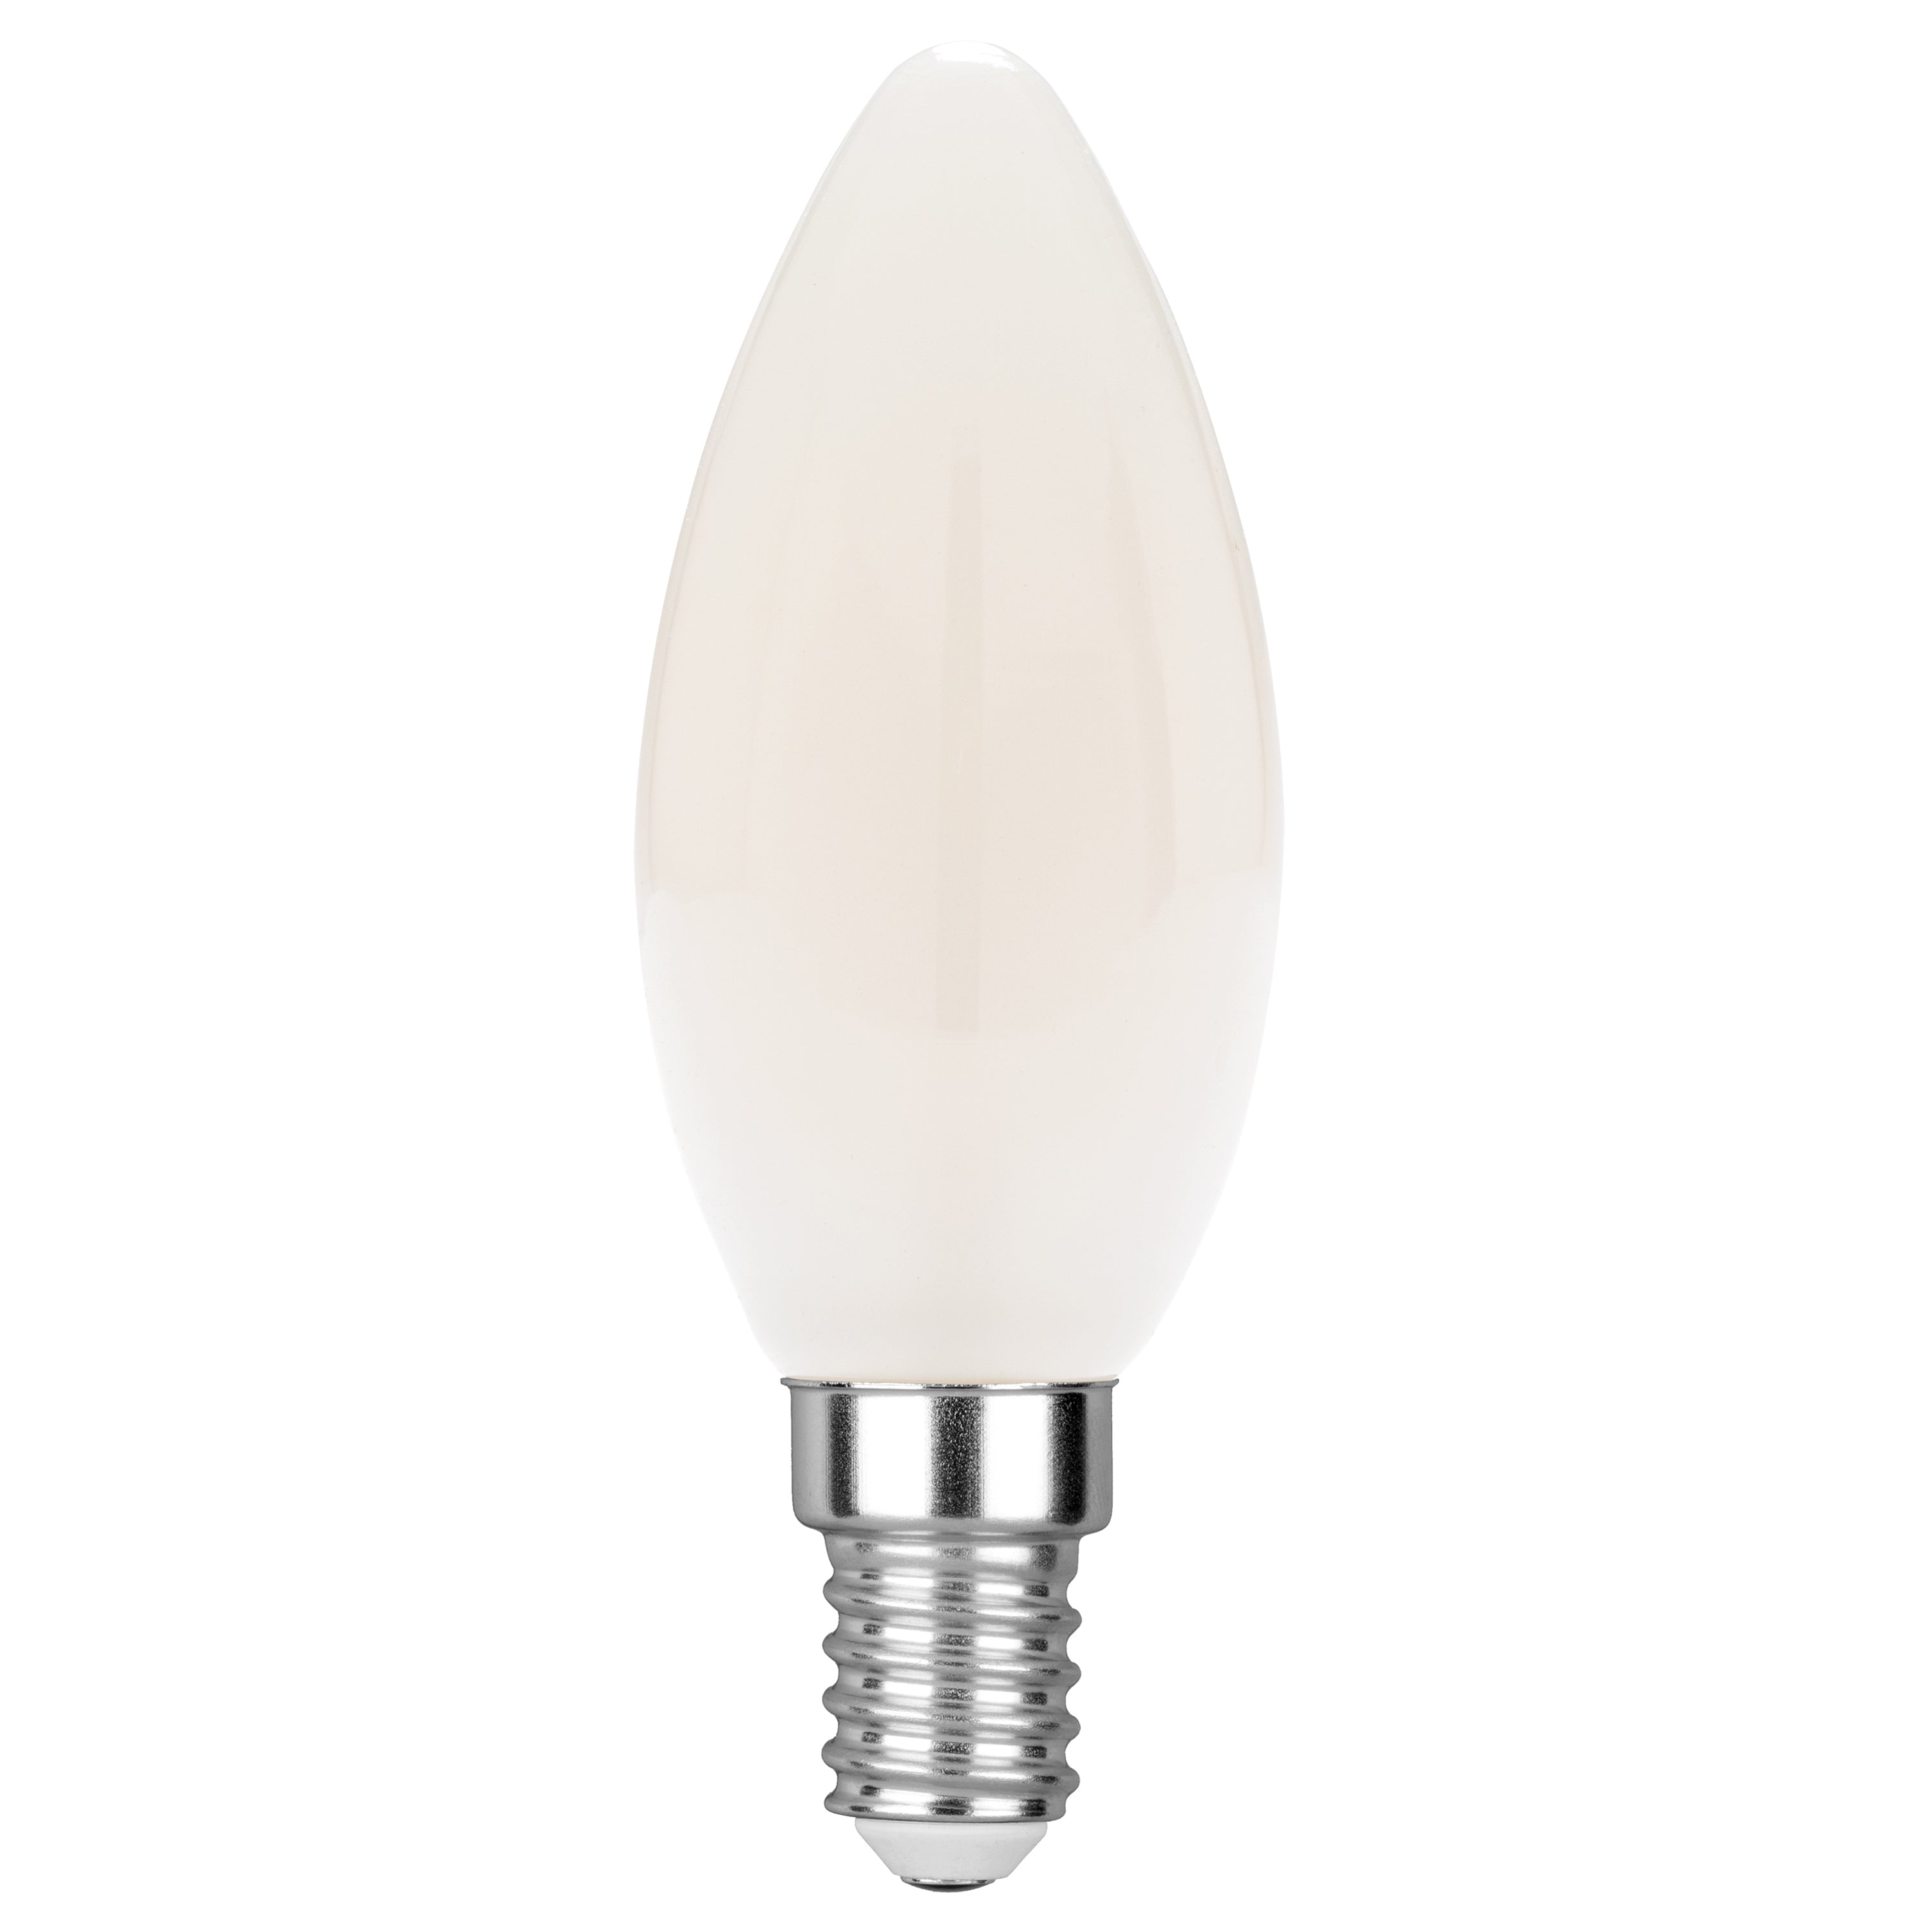 Bombilla LED LUXA con filamento vela blanca E14 6W 680L 35mm 